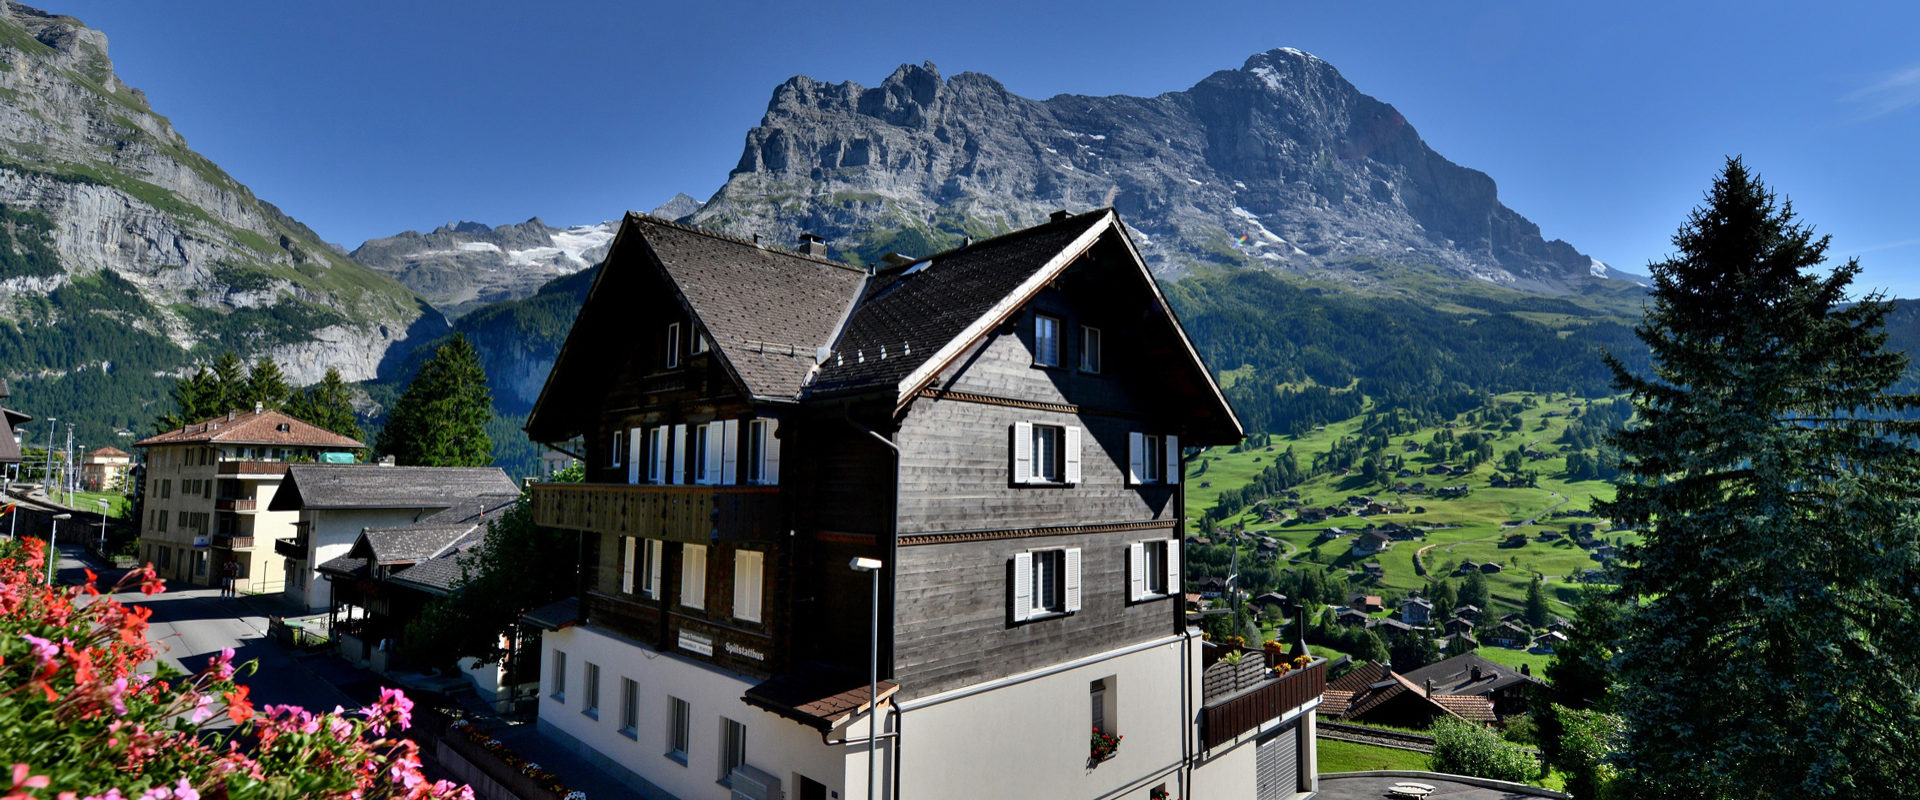 2 Personen Ferienwohnung Alpenglühen Grundriss